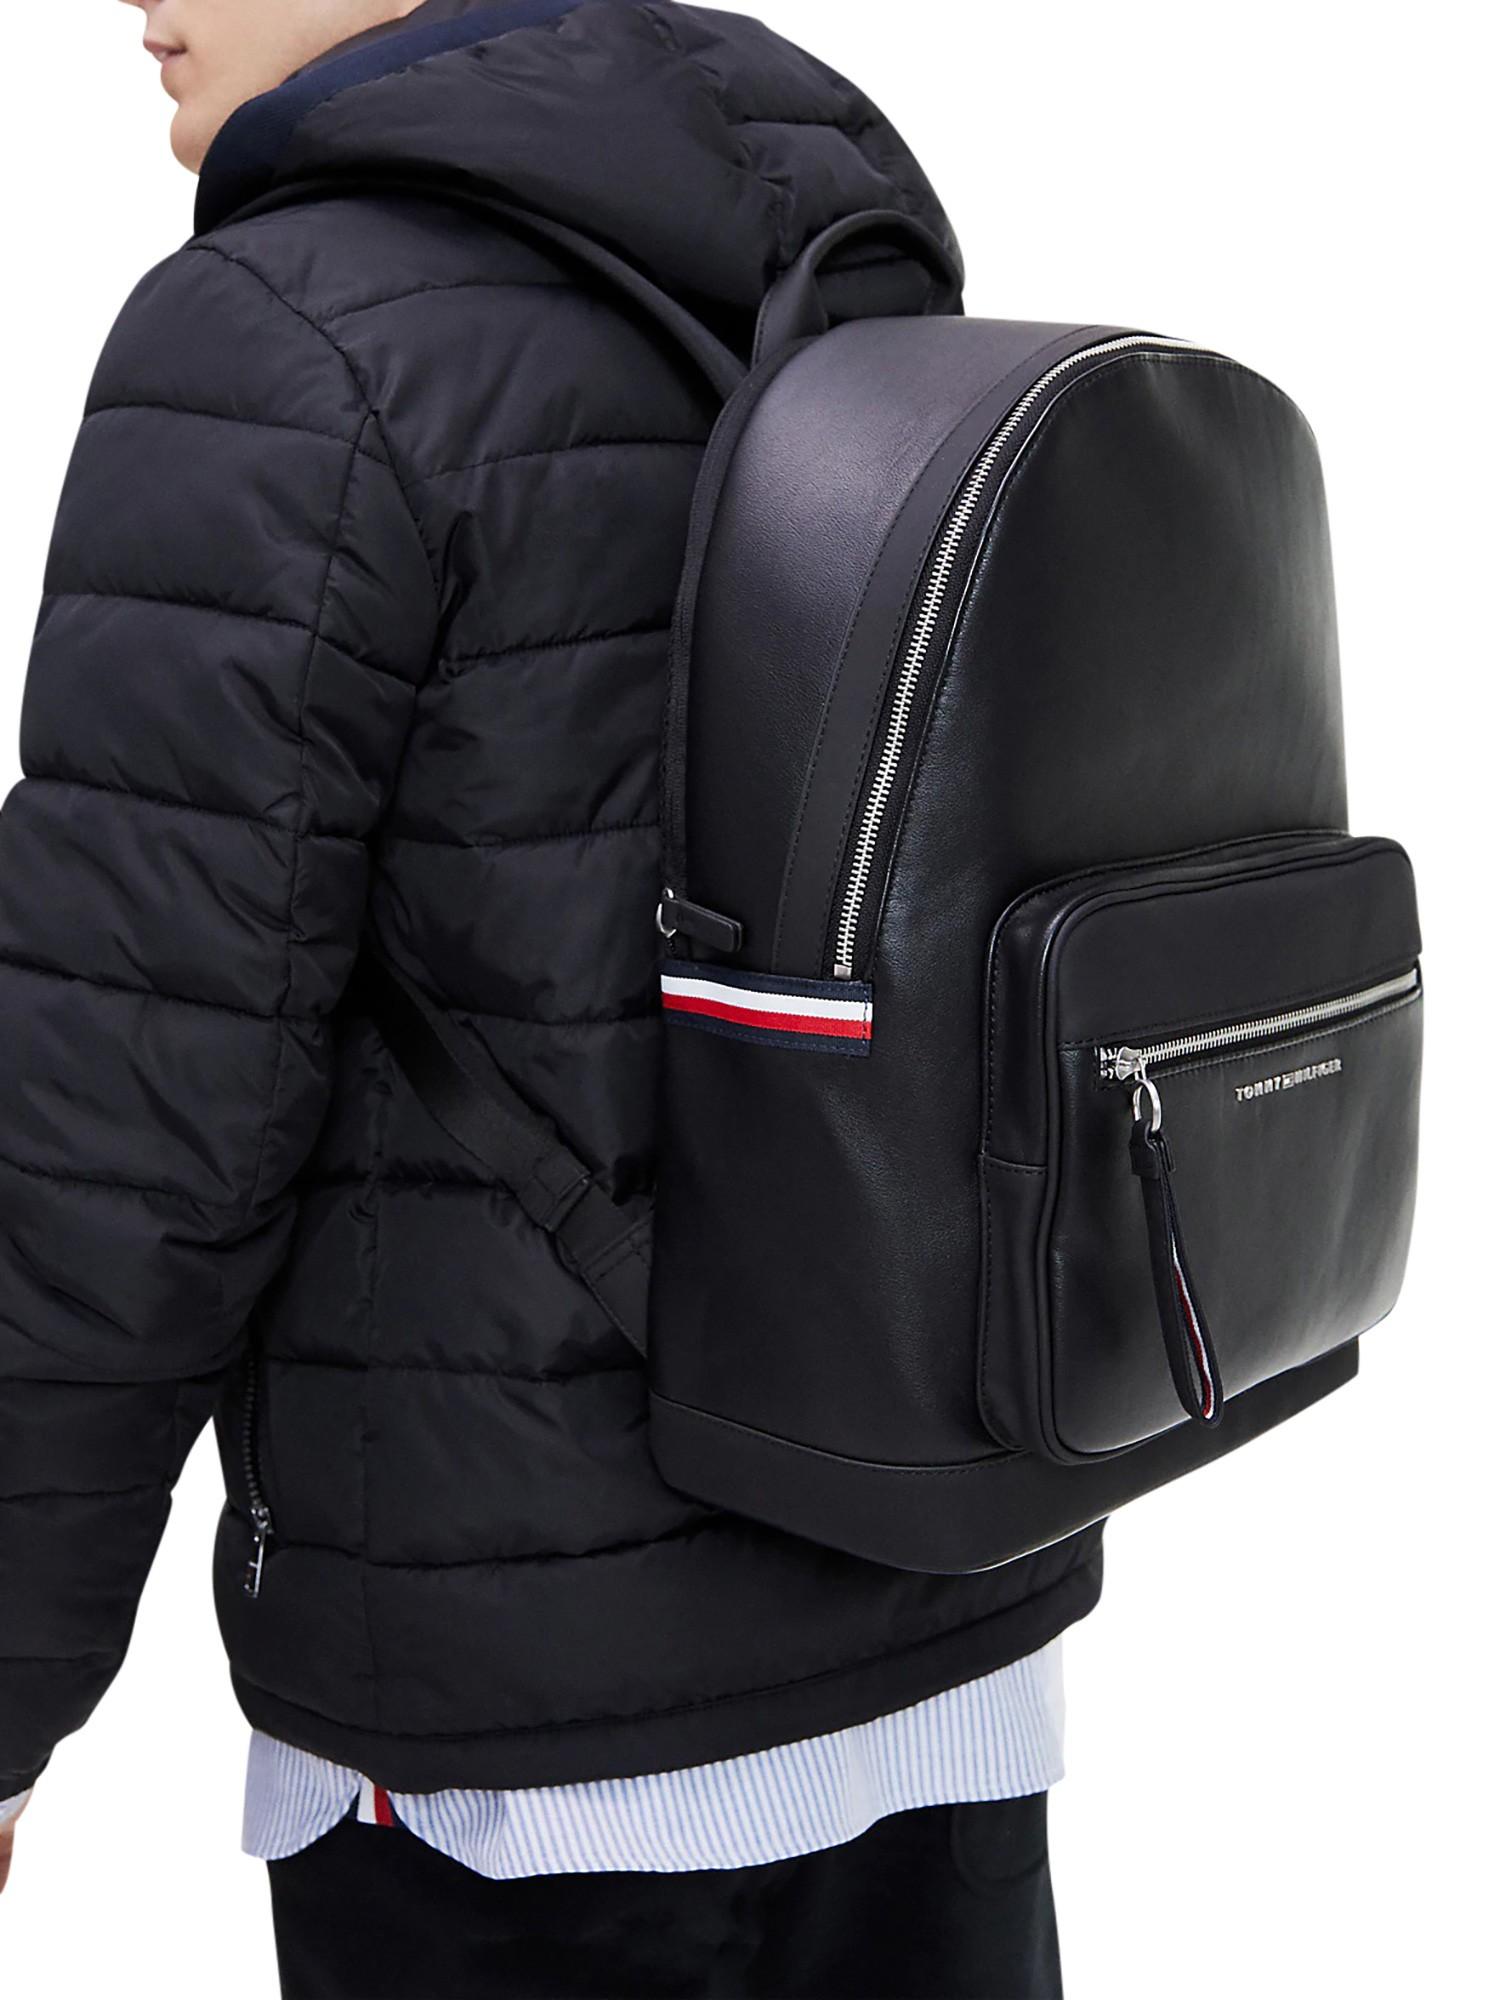 Tommy Hilfiger Metropolitan Backpack Shop, SAVE 35% - online-pmo.com